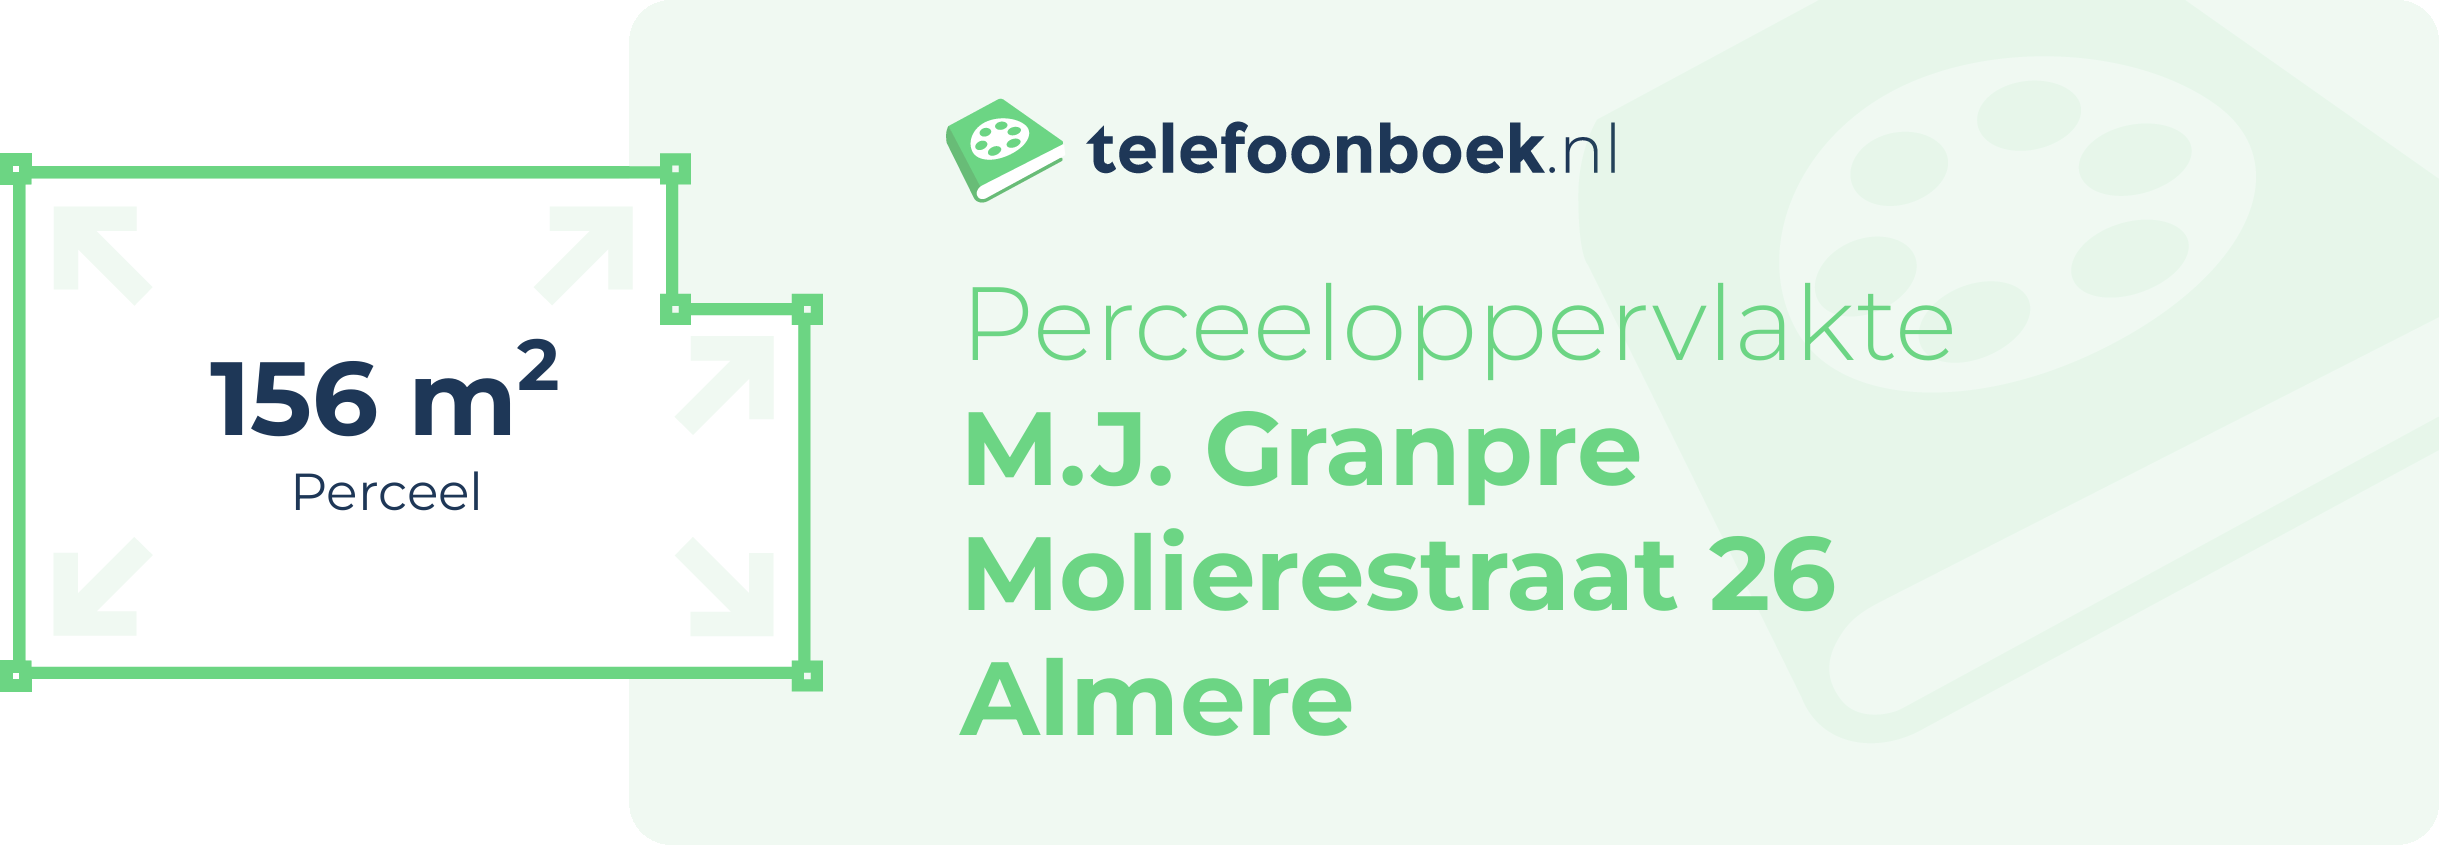 Perceeloppervlakte M.J. Granpre Molierestraat 26 Almere